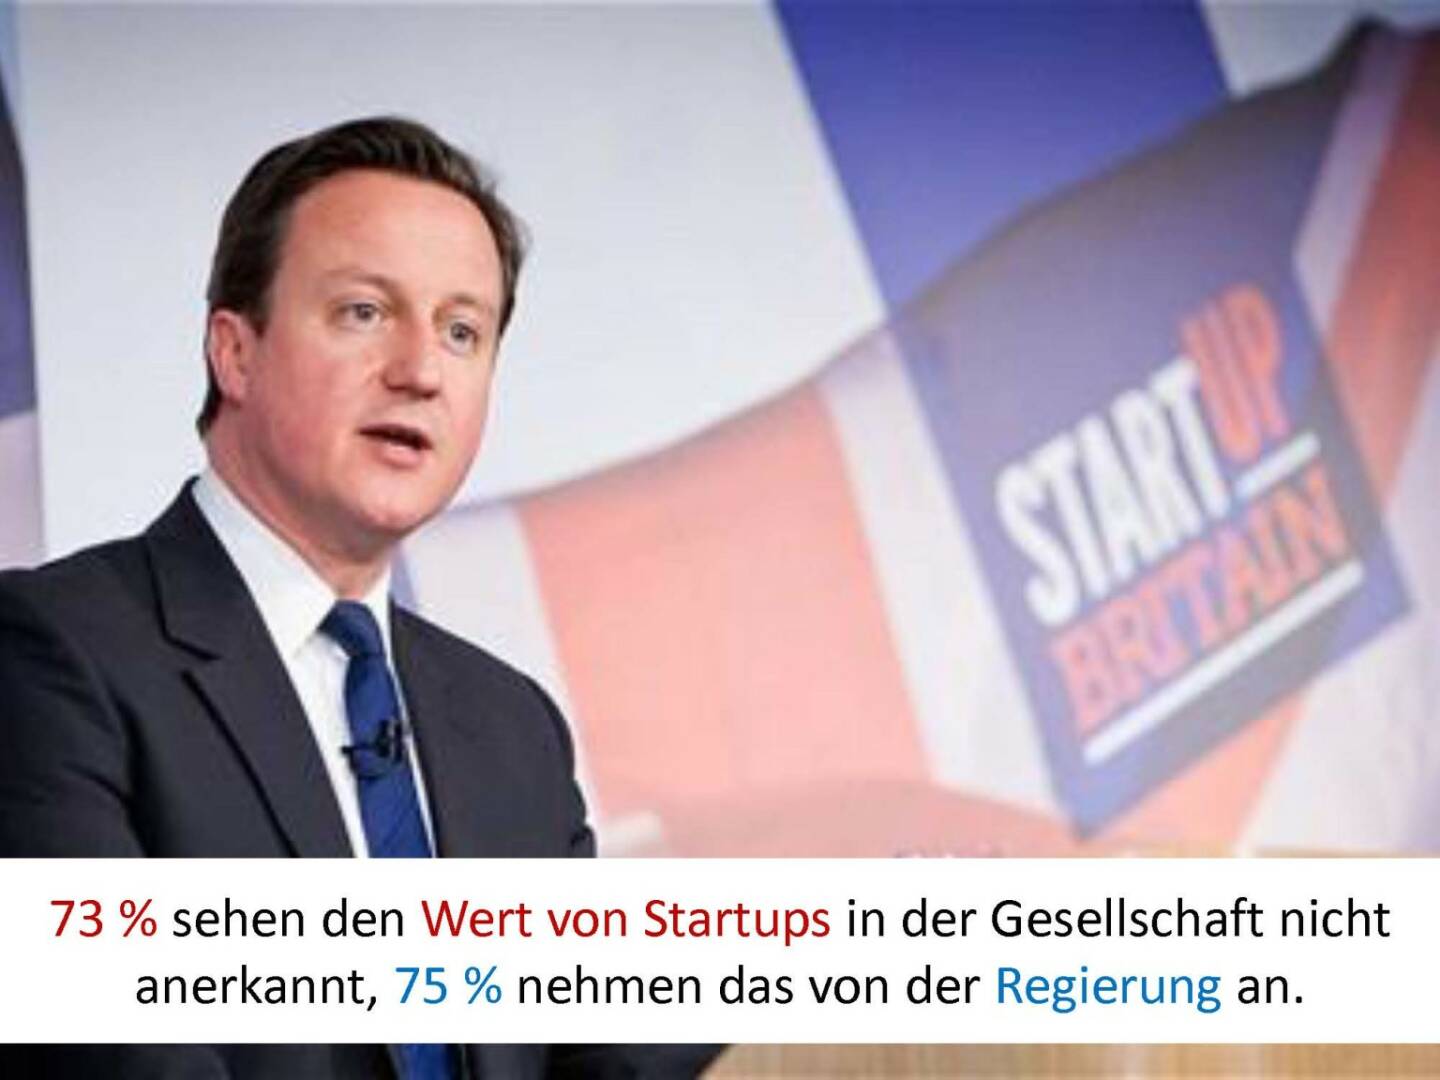 Austrian Startup Report 2013 - Regierung schaut weg